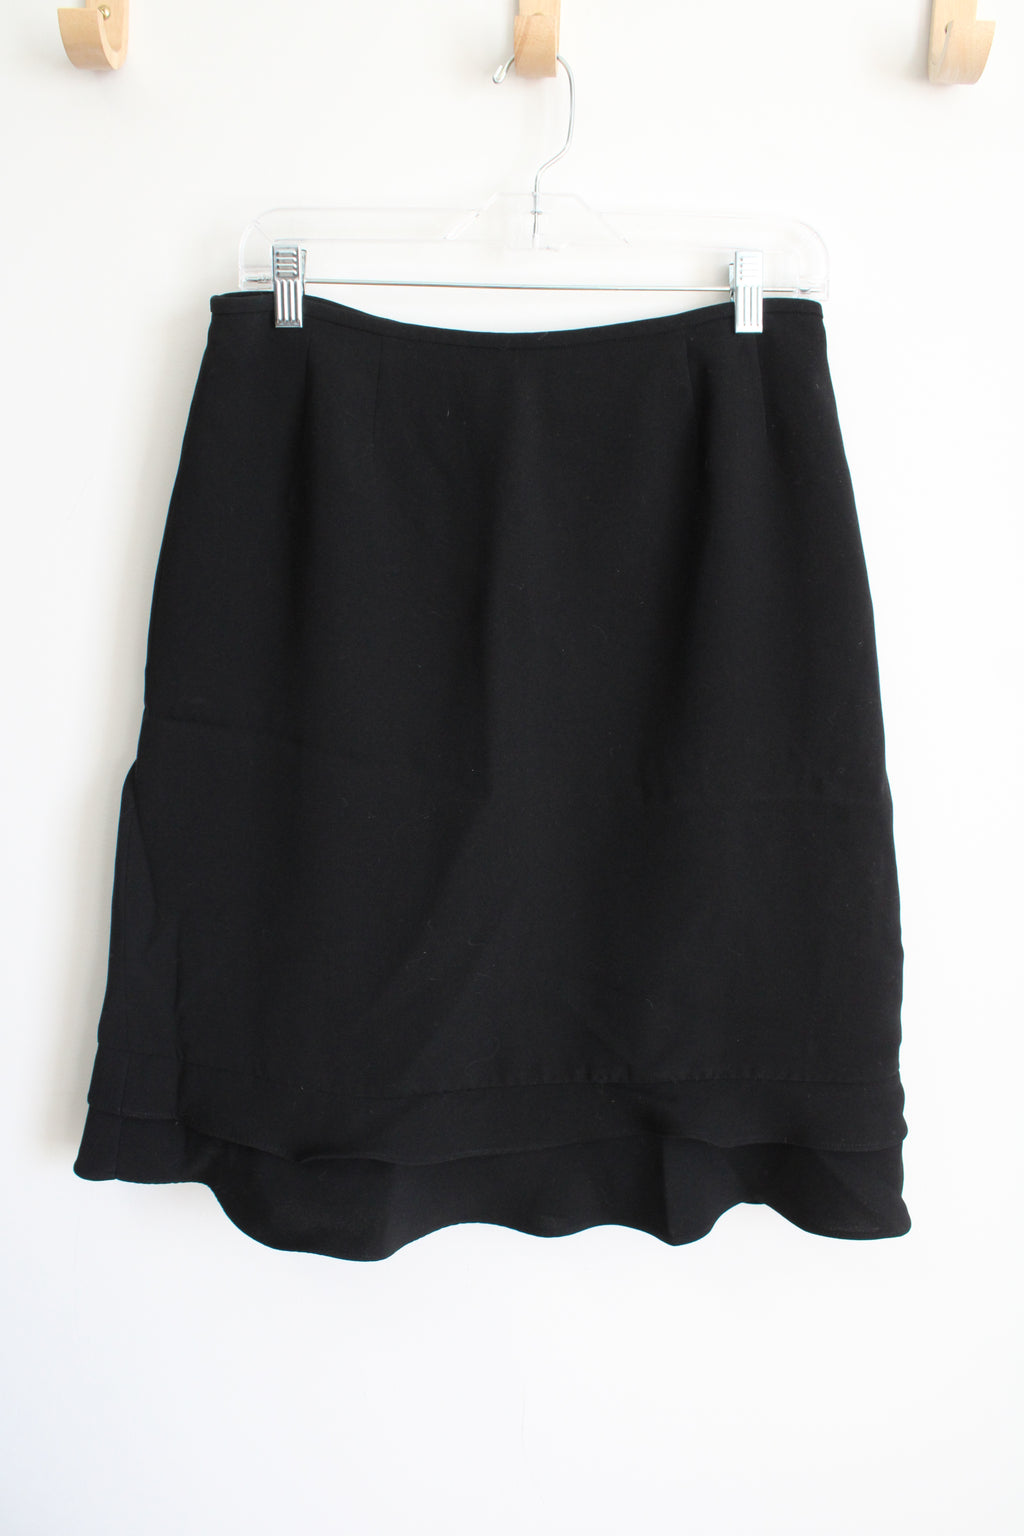 Kasper Black Ruffle Bottom Skirt | 8 Petite